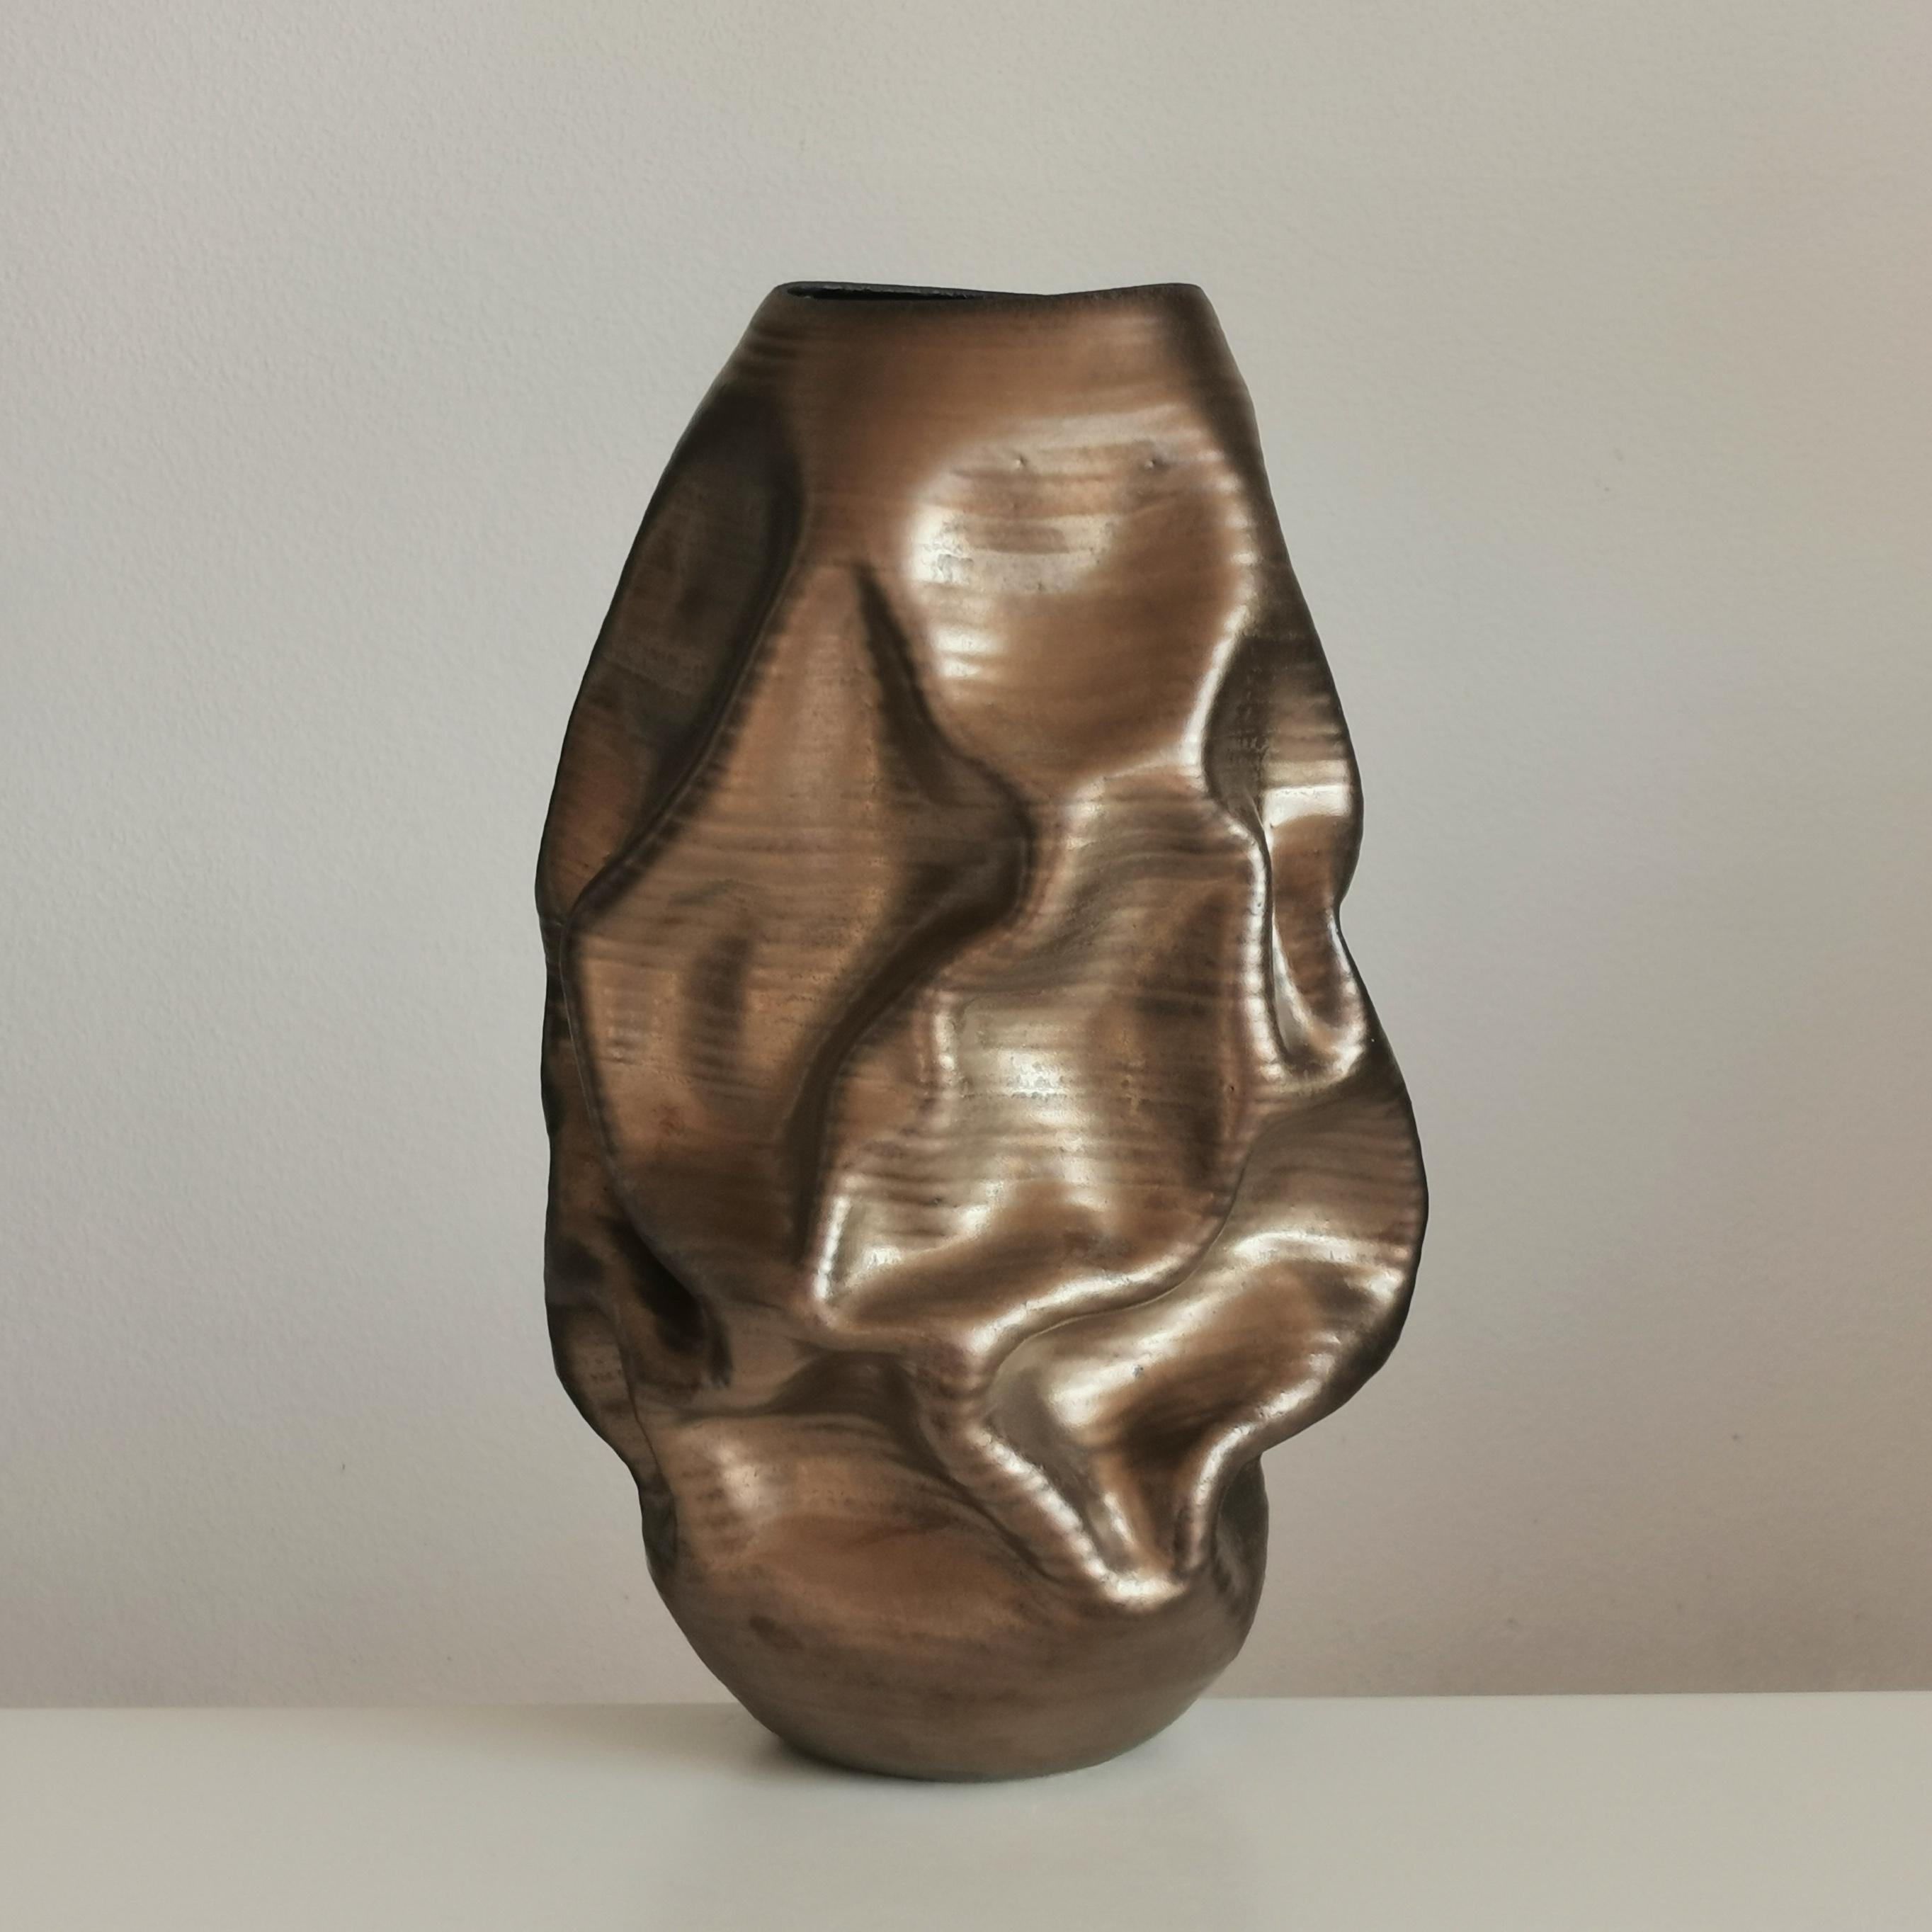 Organic Modern Tall Golden Crumpled Form N.97, Medium Ceramic Sculpture, Objet D'Art